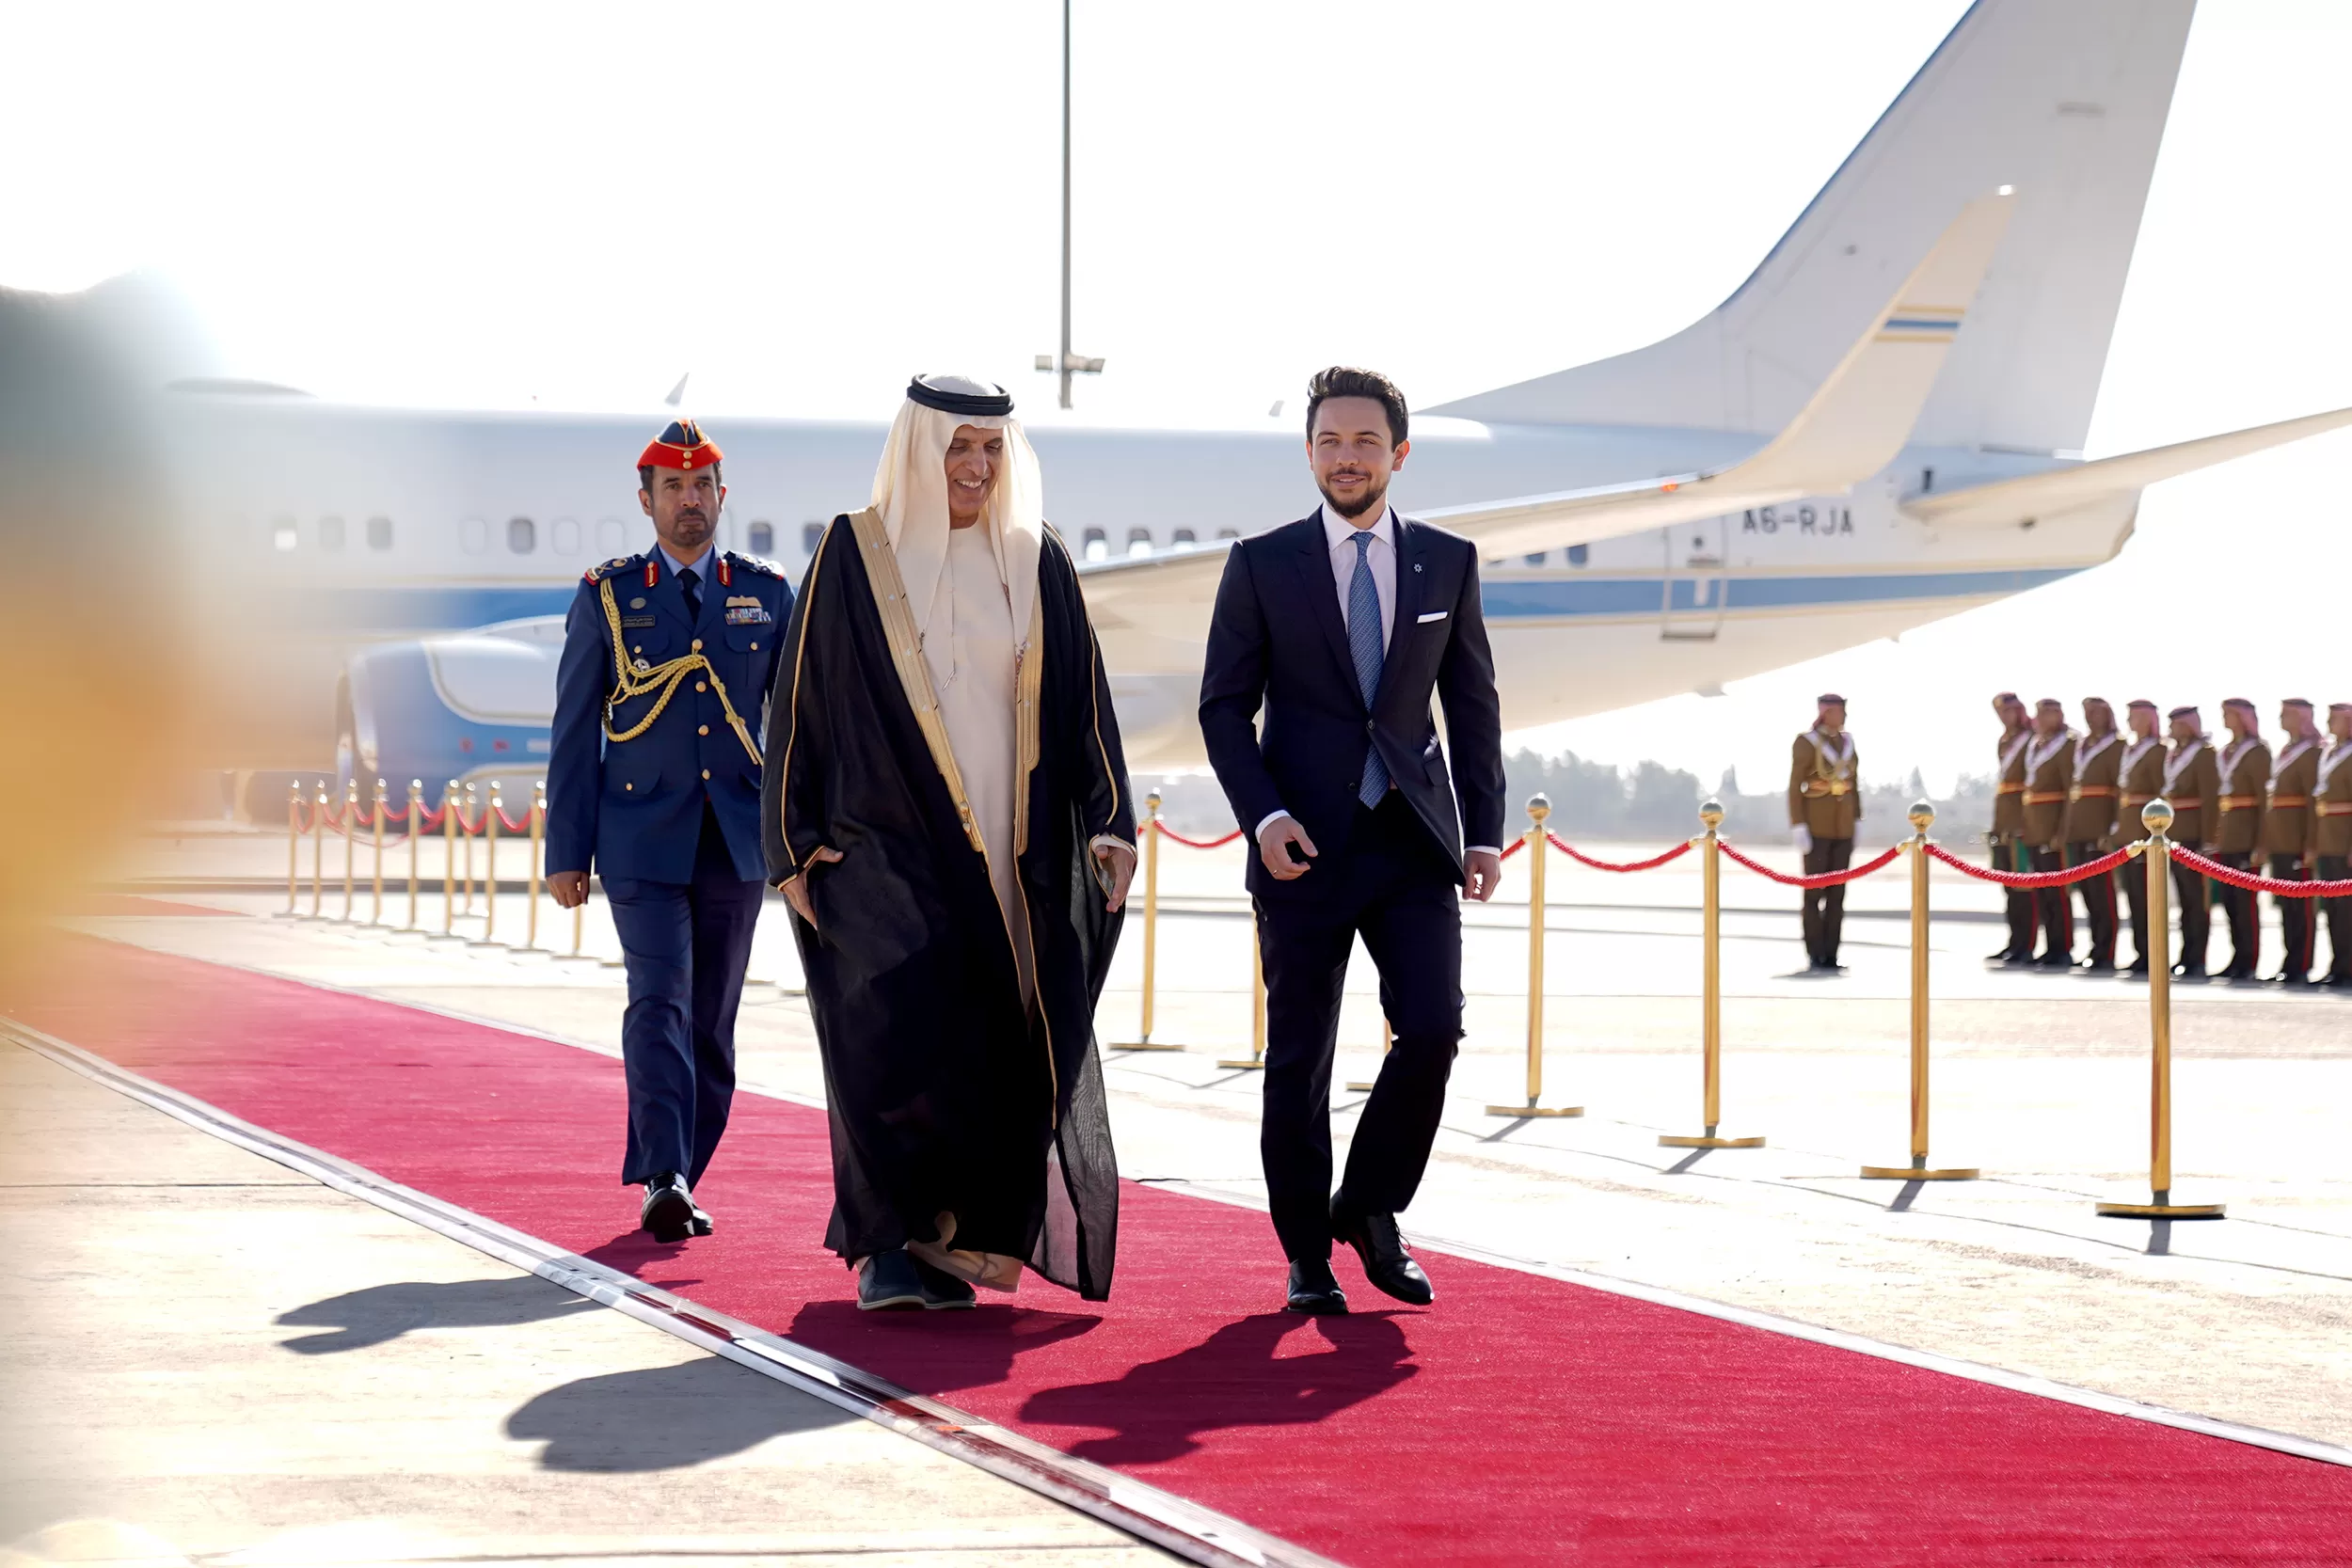 مدار الساعة, أخبار الأردن,ولي العهد,الأمير الحسين,الإمارات العربية المتحدة,البحر الميت,مطار الملكة علياء,رئيس الوزراء